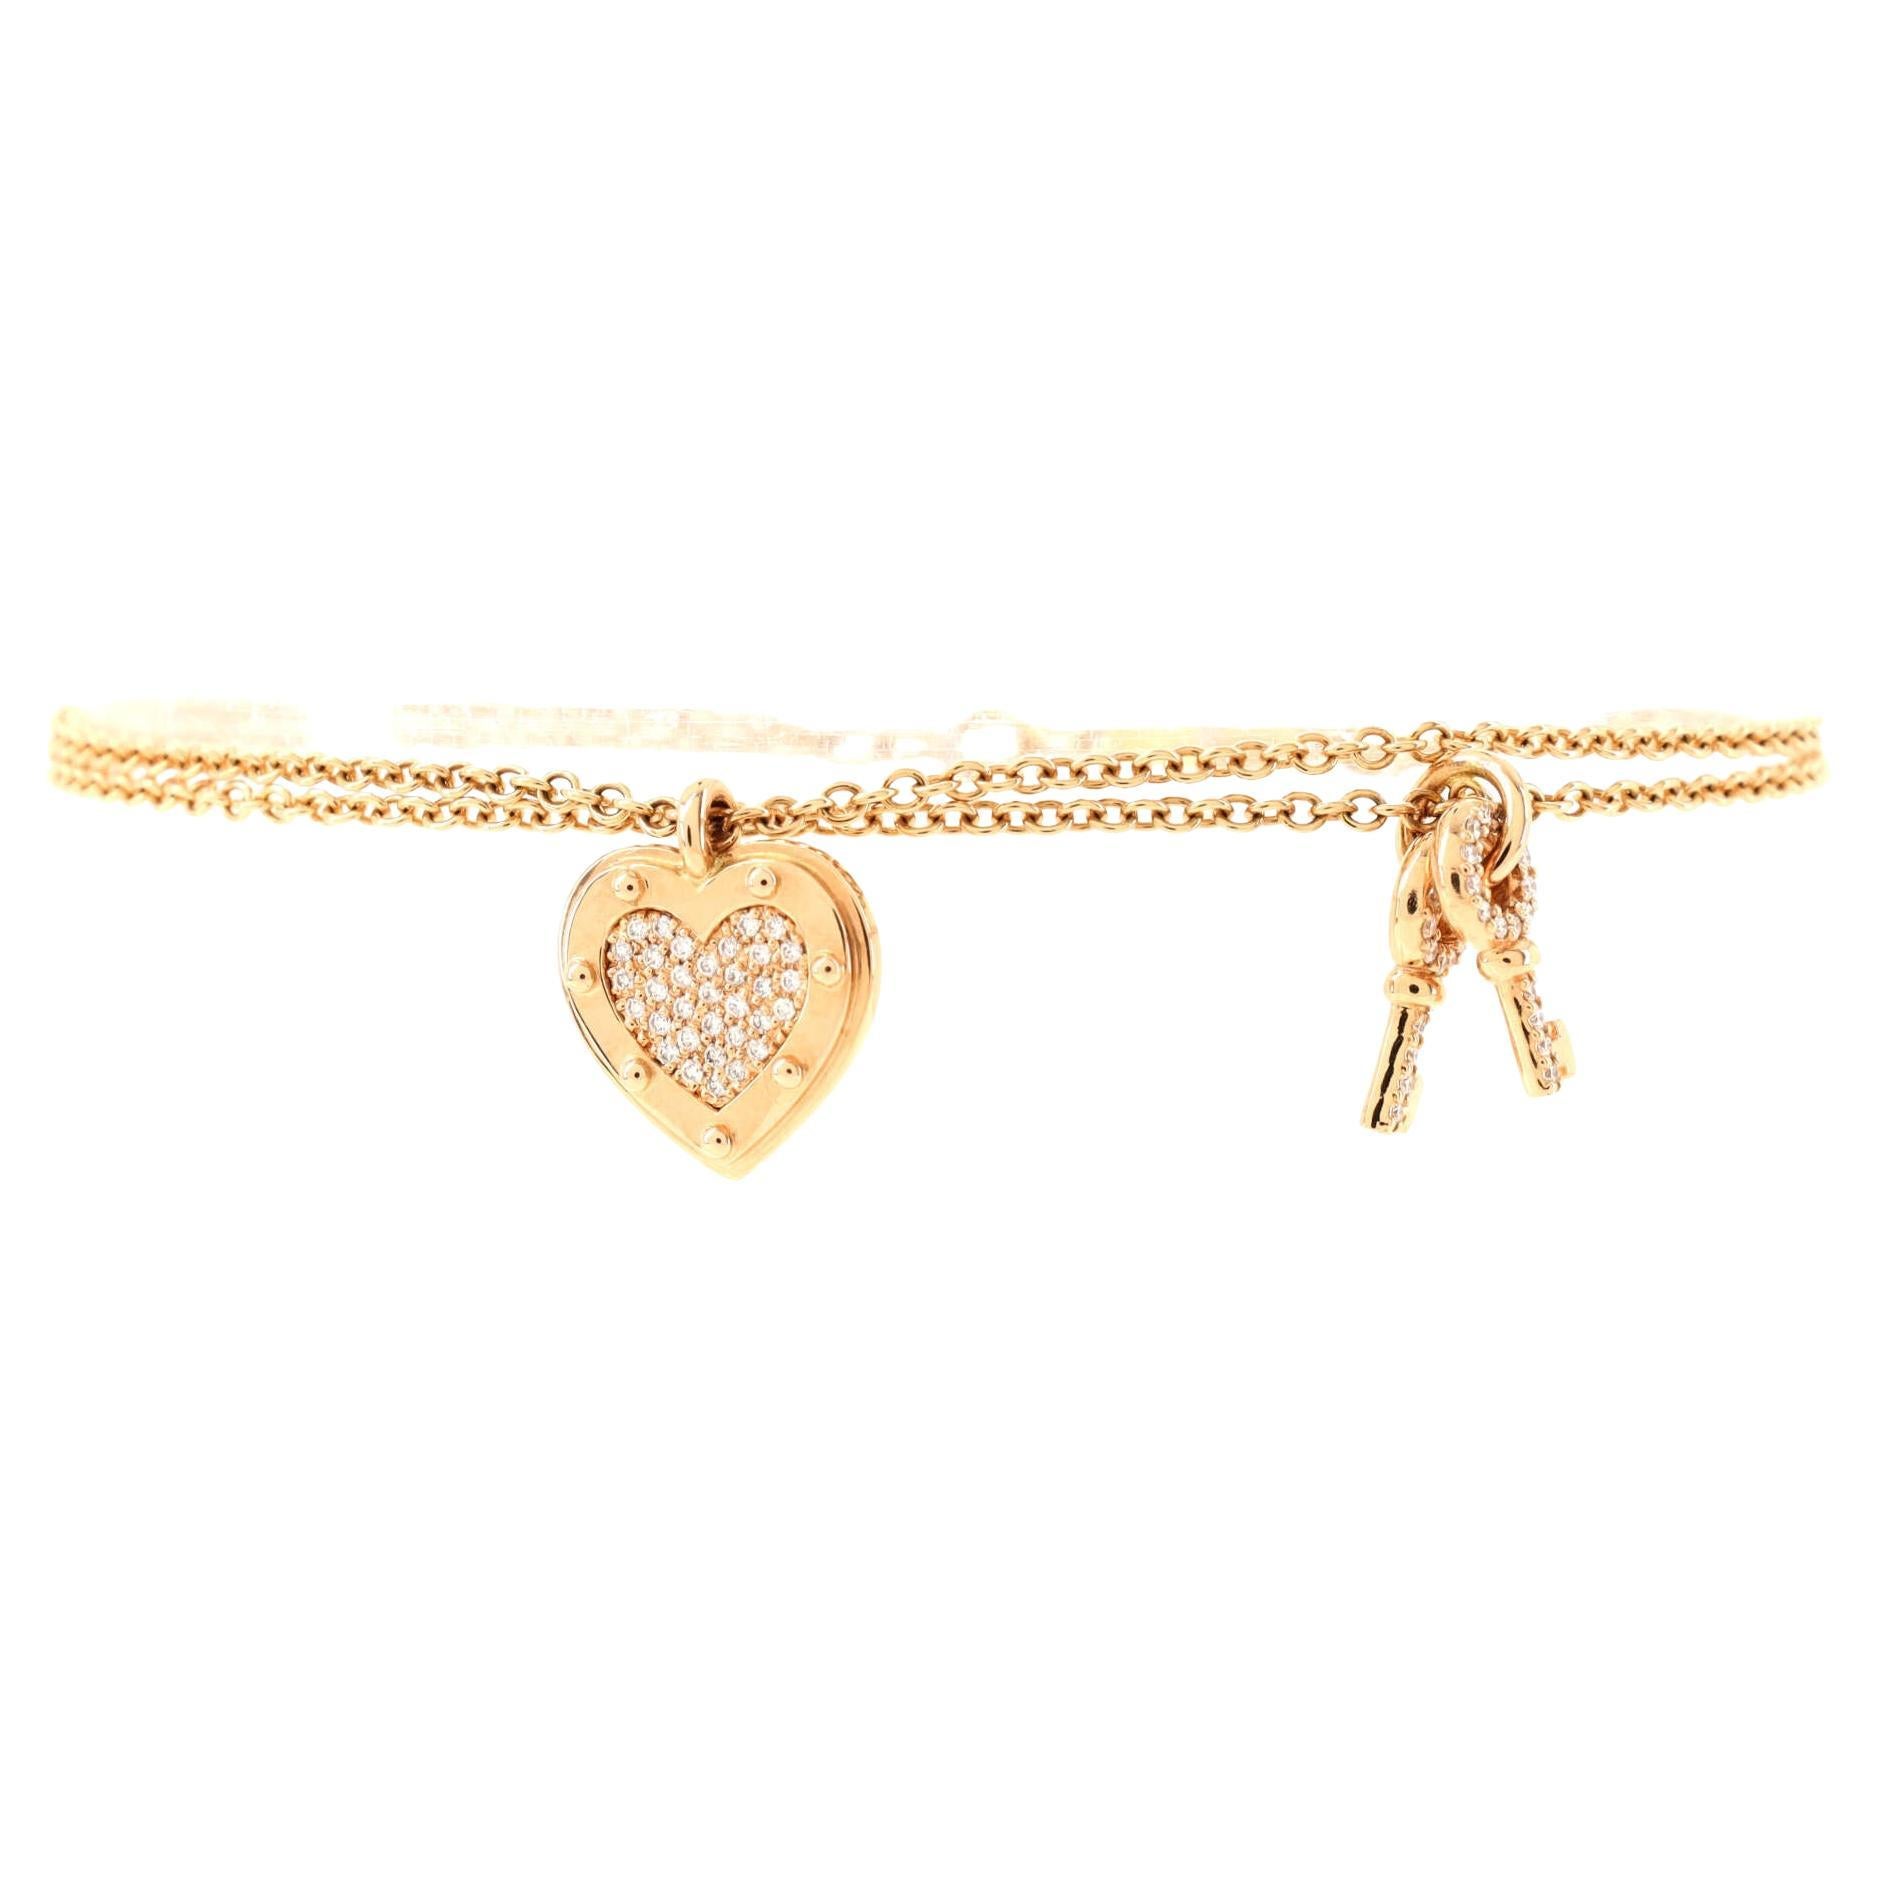 Tiffany & Co. Return to Tiffany Love Heart Tag and Key Charm Bracelet 18k